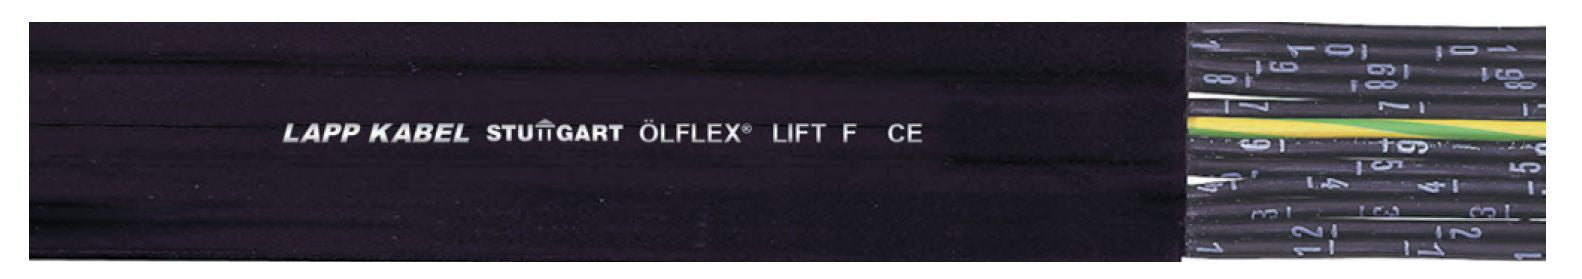 LAPP KABEL LAPP KABEL ÖLFLEX® Lift F Flat Cables, PVC Control Cable - BNR Industrial